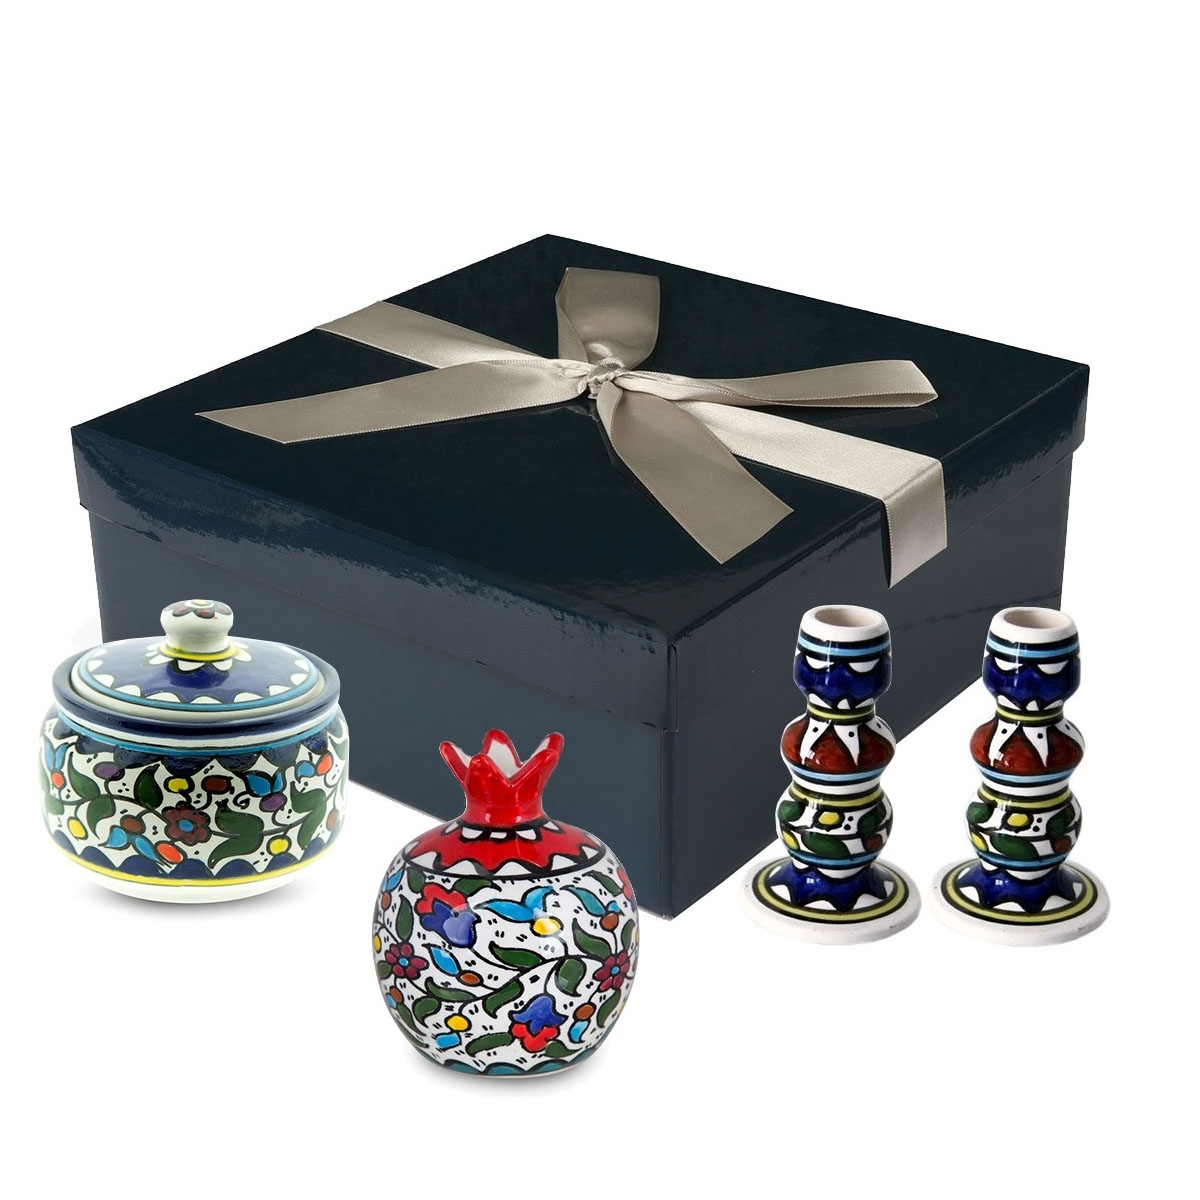 Rosh Hashanah Armenian Ceramic Tableware Gift Box - 1